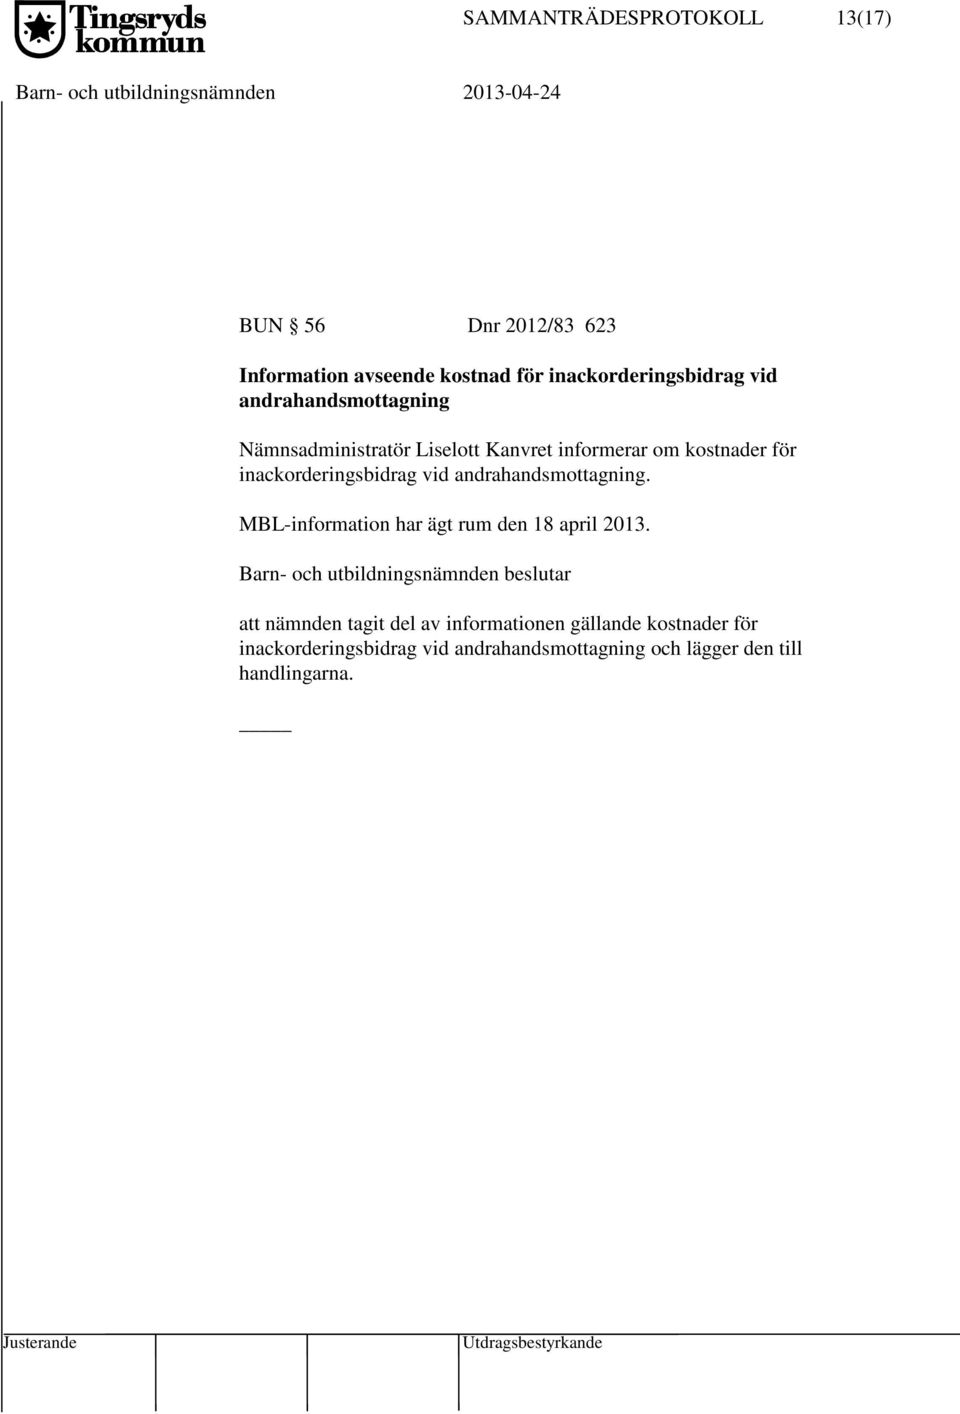 inackorderingsbidrag vid andrahandsmottagning. MBL-information har ägt rum den 18 april 2013.